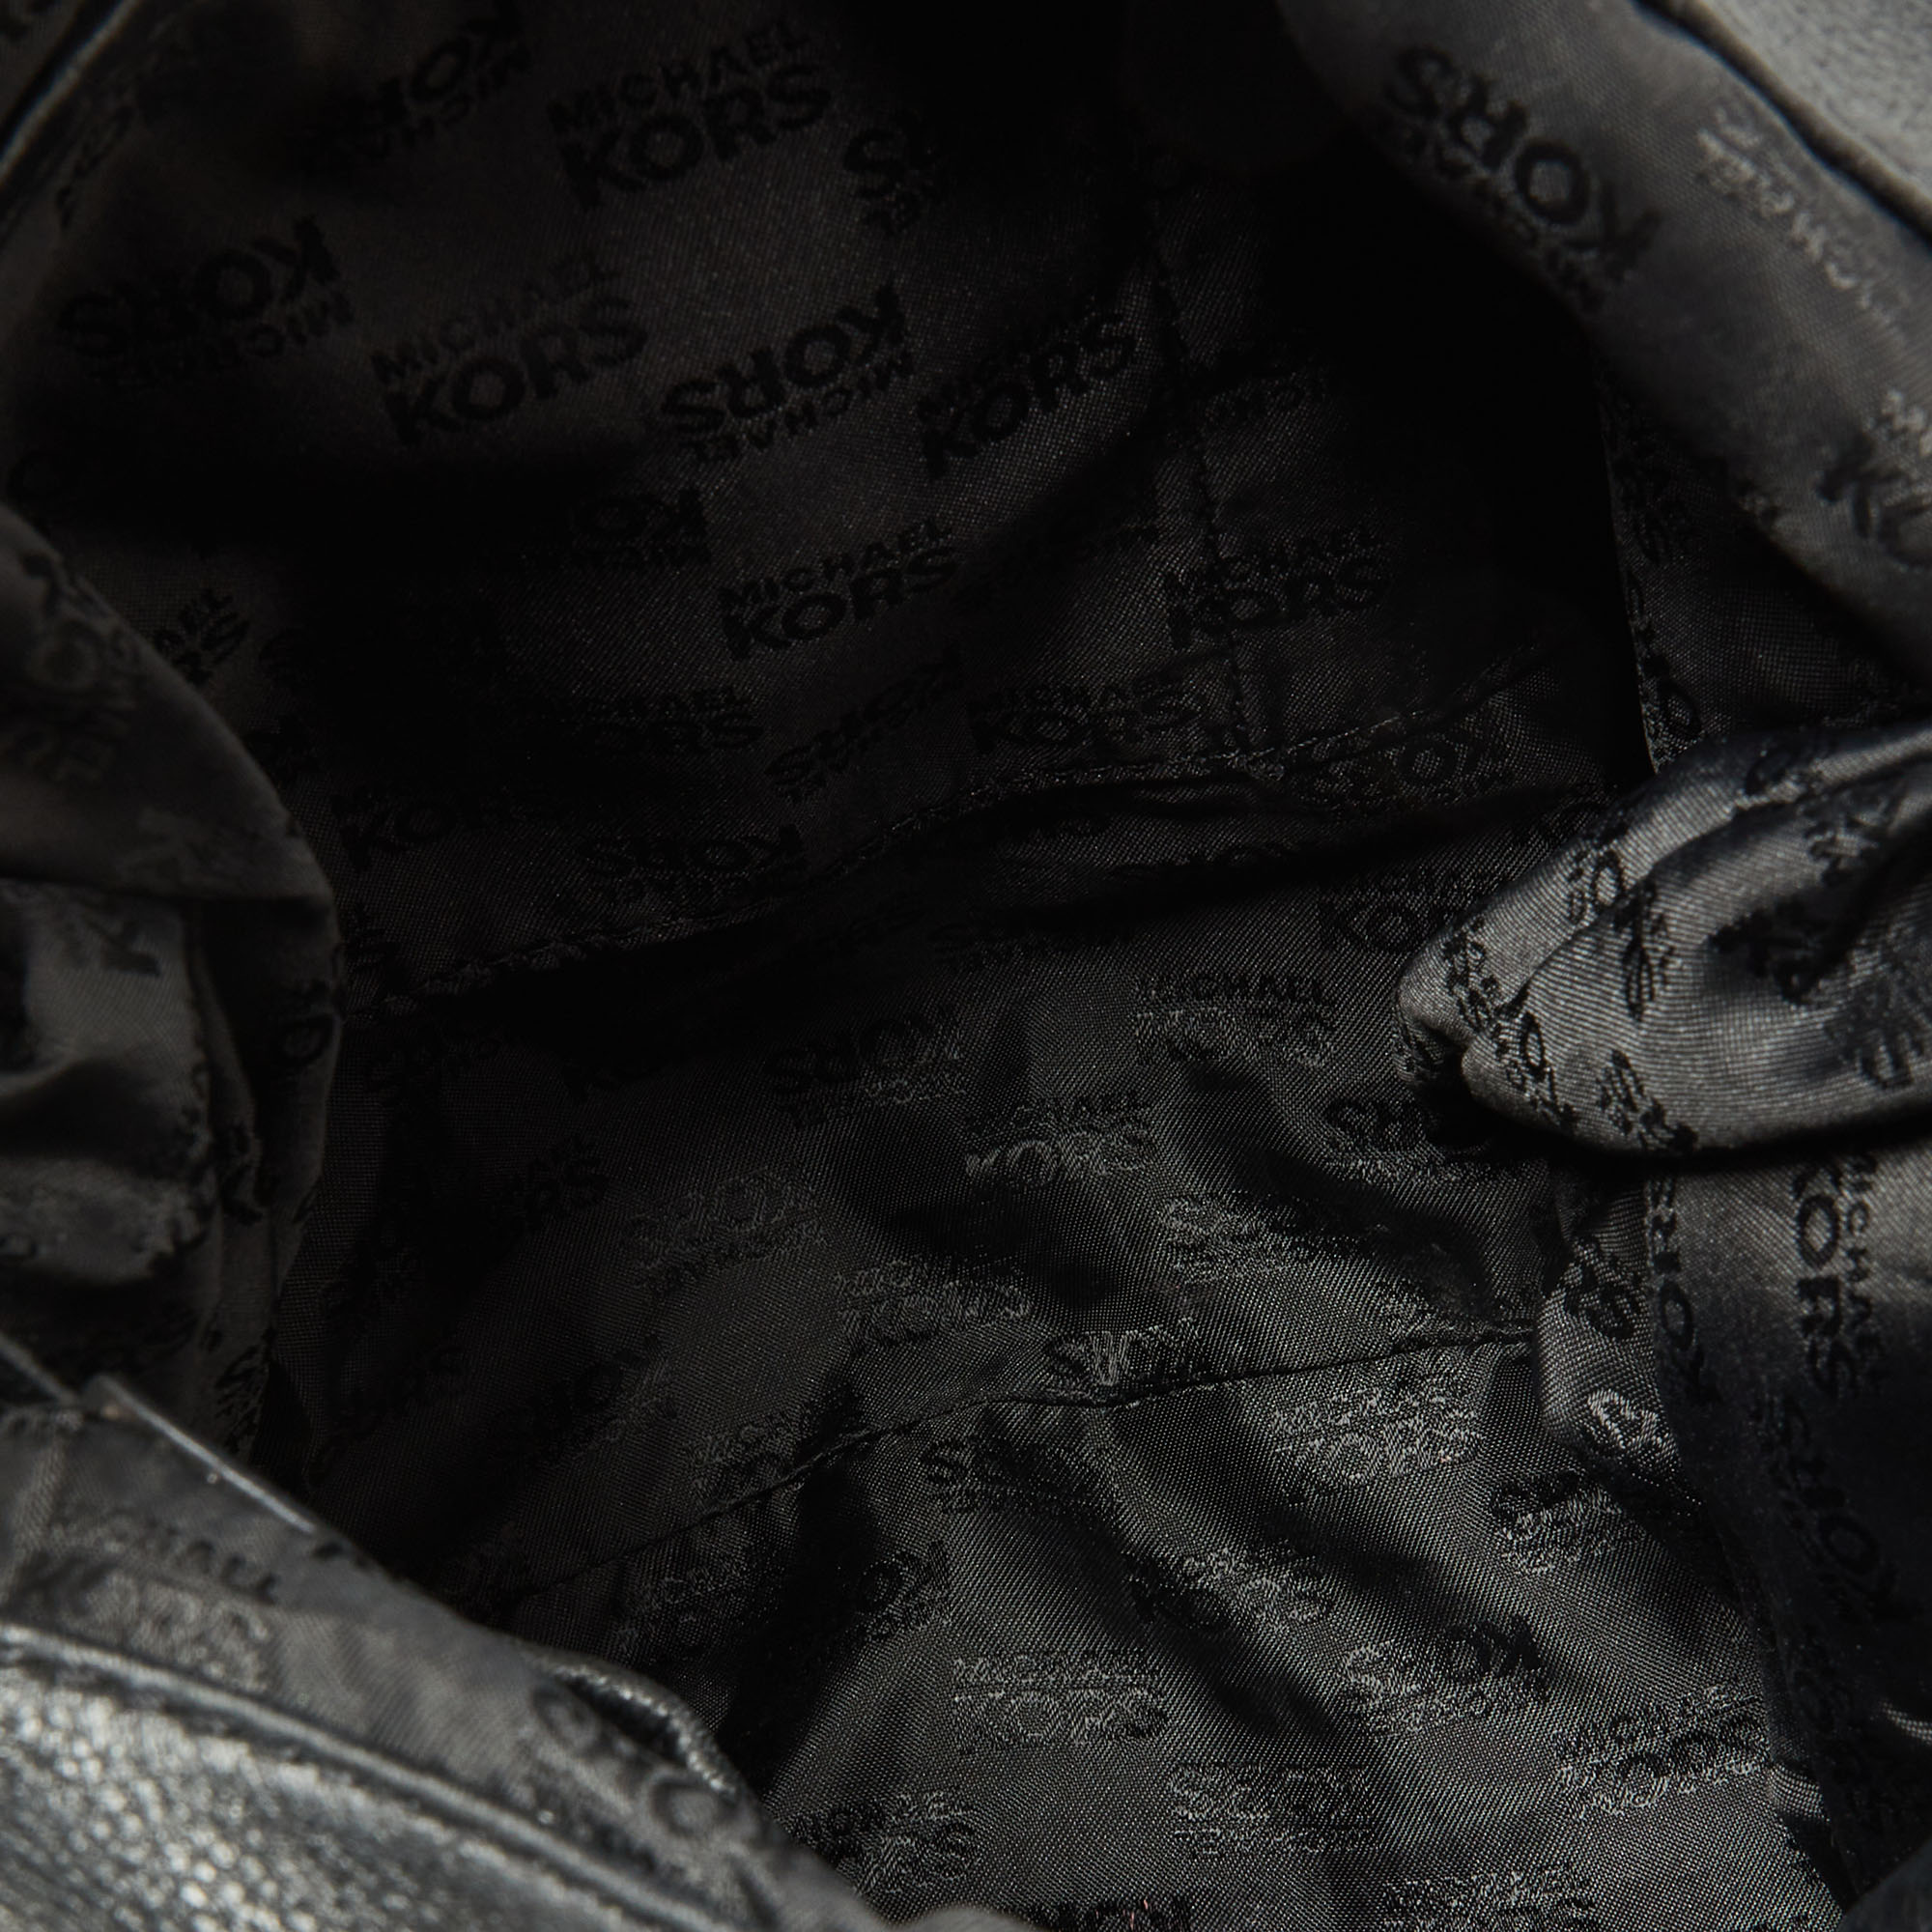 MICHAEL Michael Kors Black Leather Drawstring Shoulder Bag